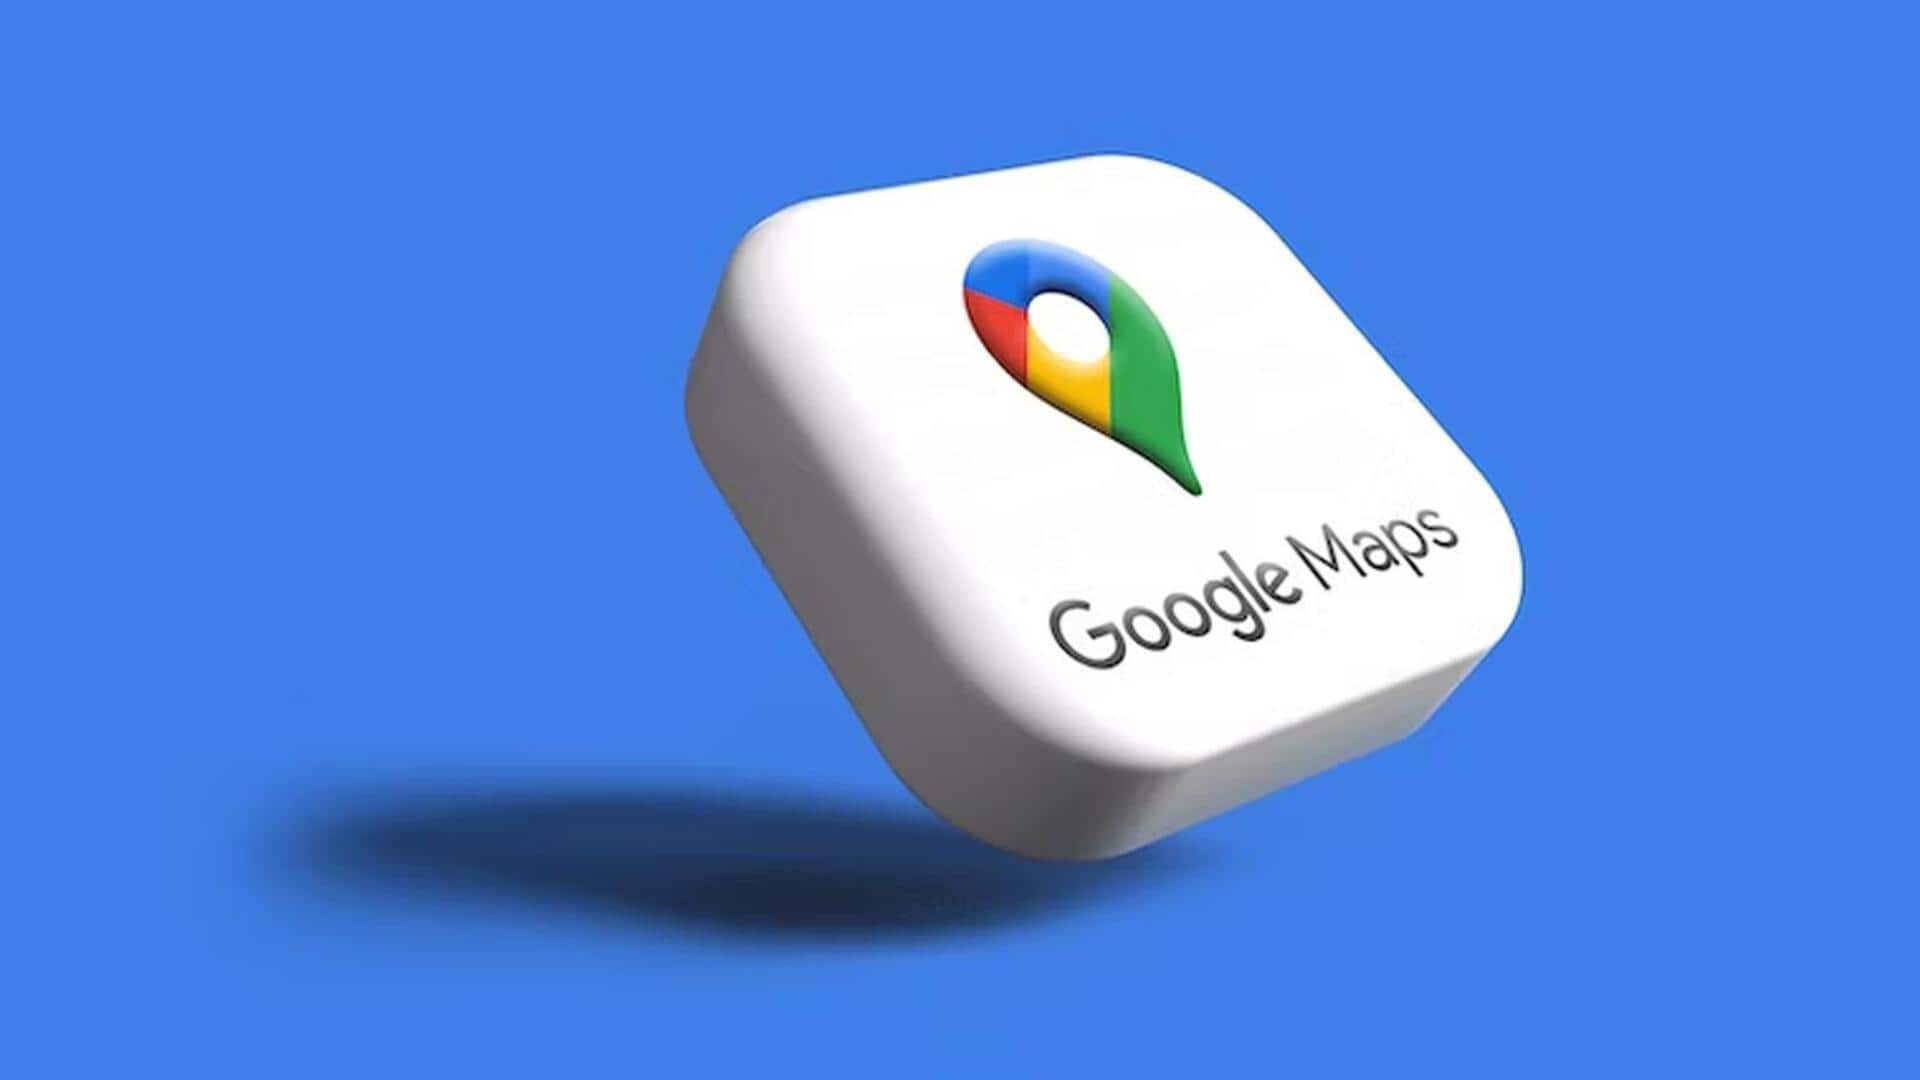 गूगल मैप के लिए पेश हुआ ग्लांसेबल डायरेक्शन फीचर, जानिए खासियत